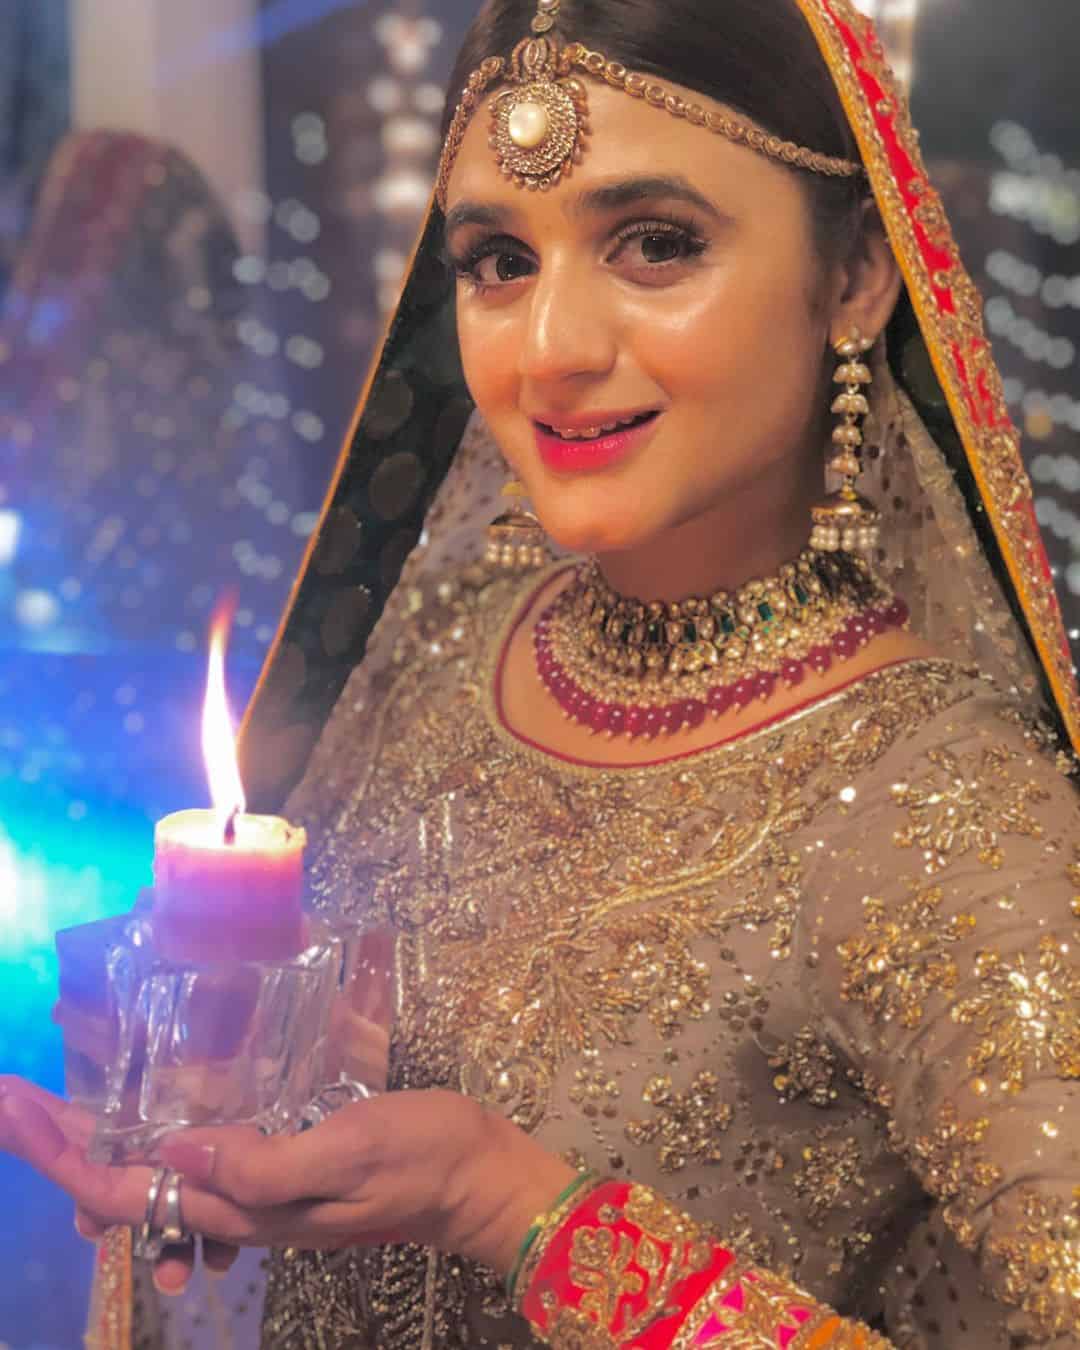 Beautiful Actress Hira Mani's Latest Clicks as Bride